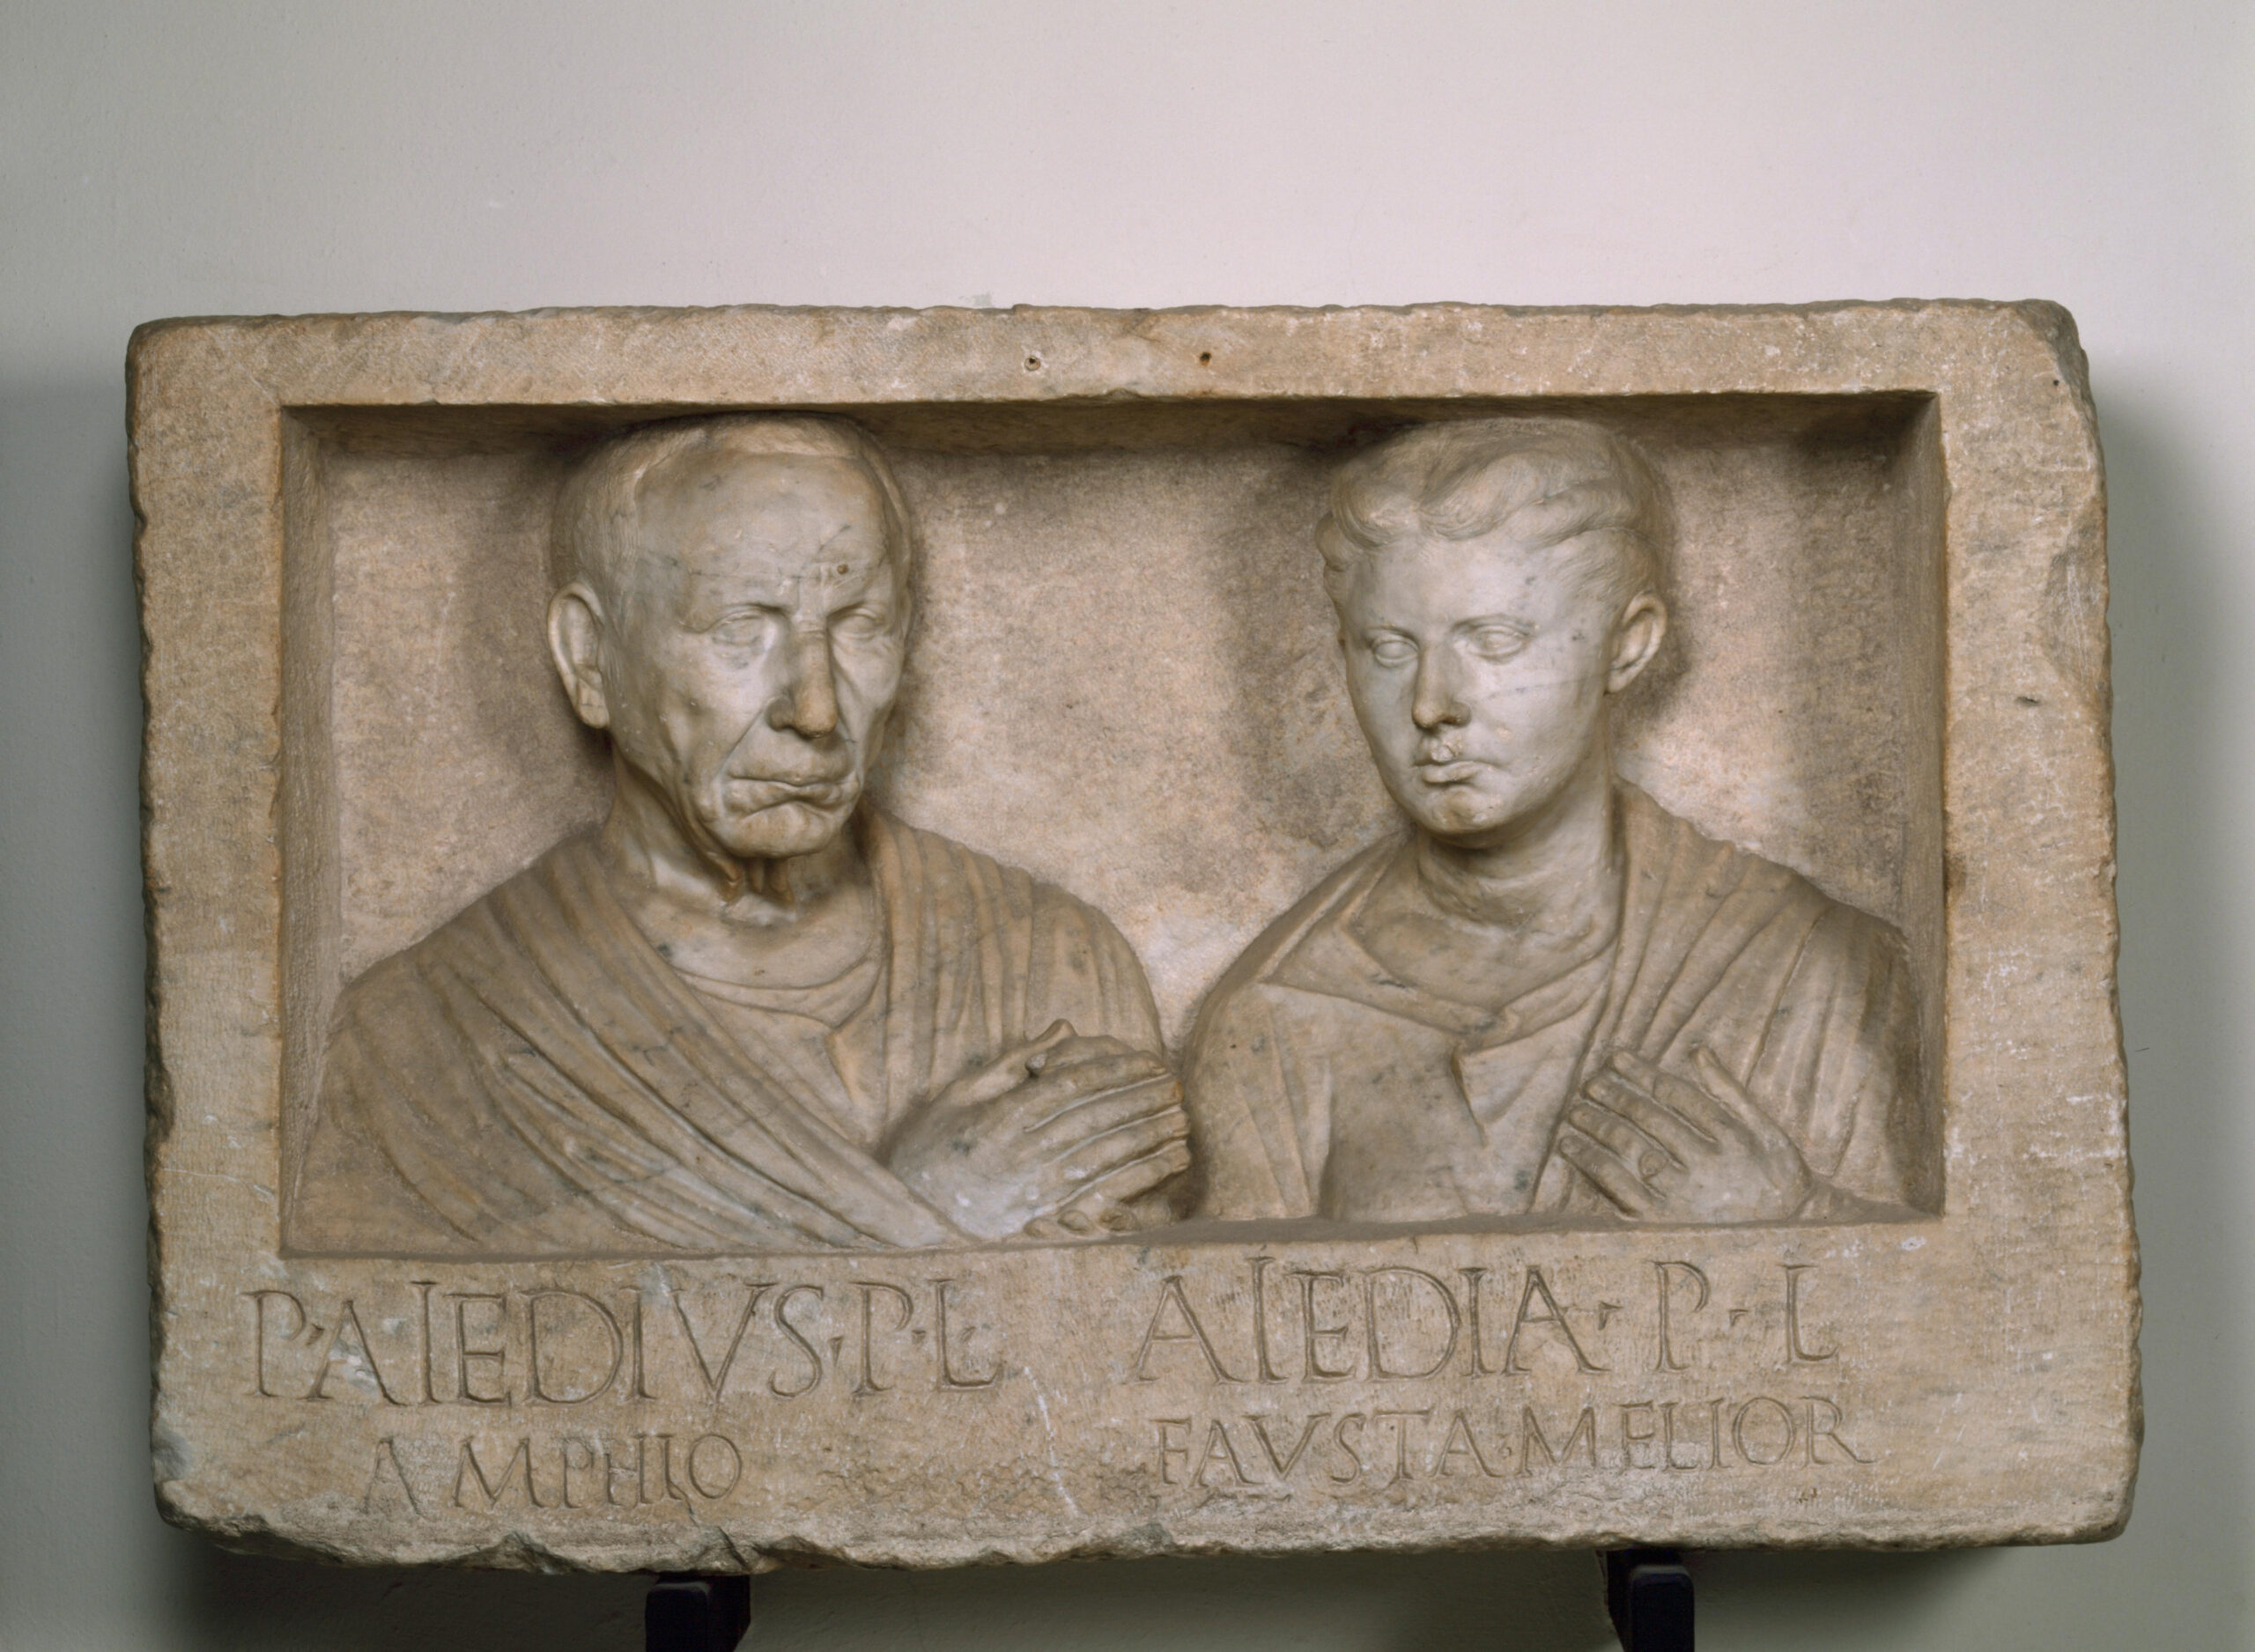 Rilievo sepolcrale di Publius Aiedius Amphio e Aiedia Fausta Melior